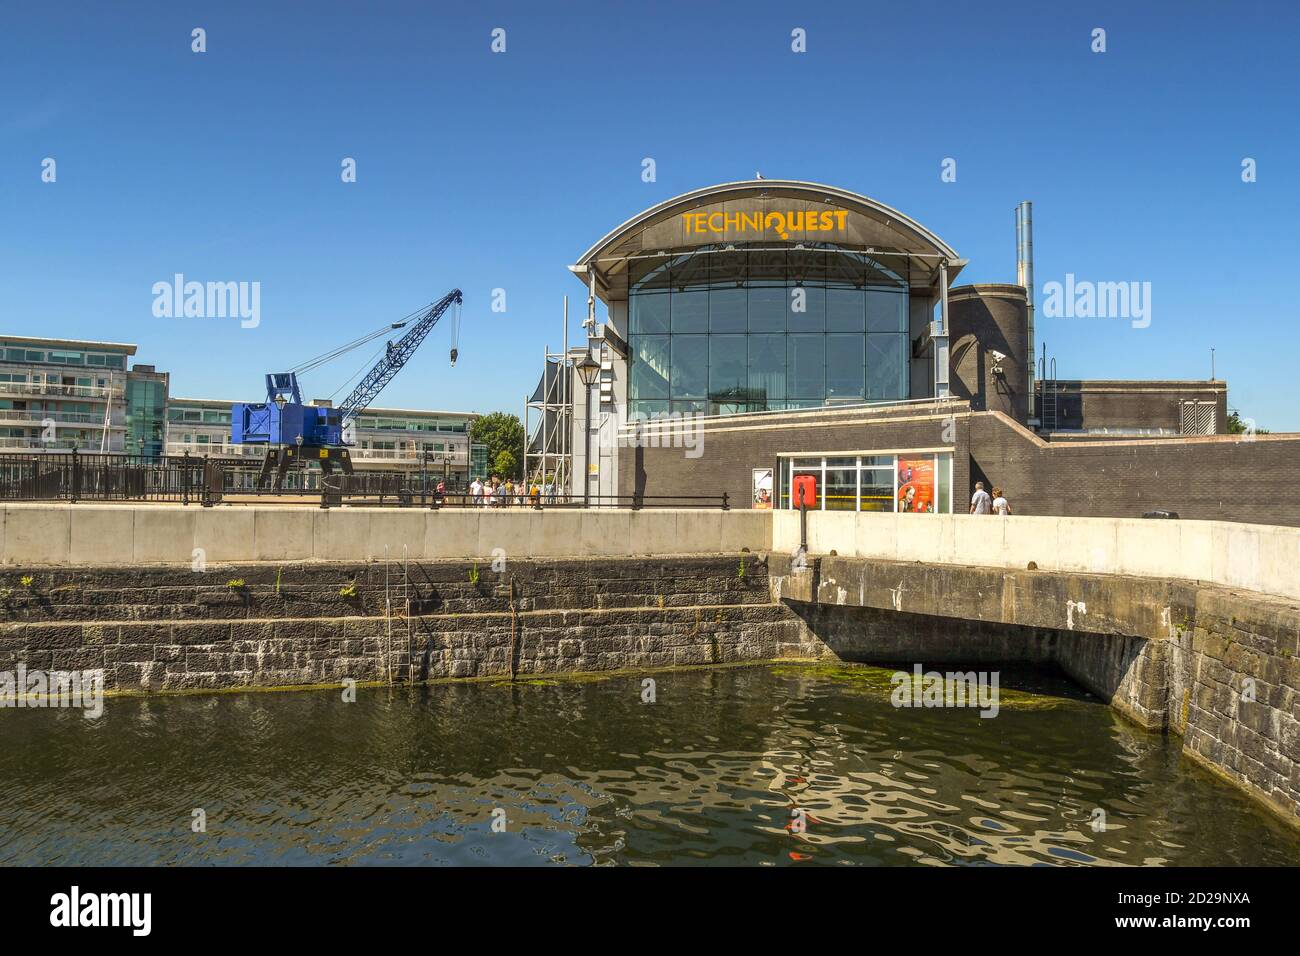 Cardiff, Galles - Luglio 2018: L'edificio Techniquest nella baia di Cardiff contro un cielo blu profondo. In primo piano è uno dei moli restaurati. Foto Stock